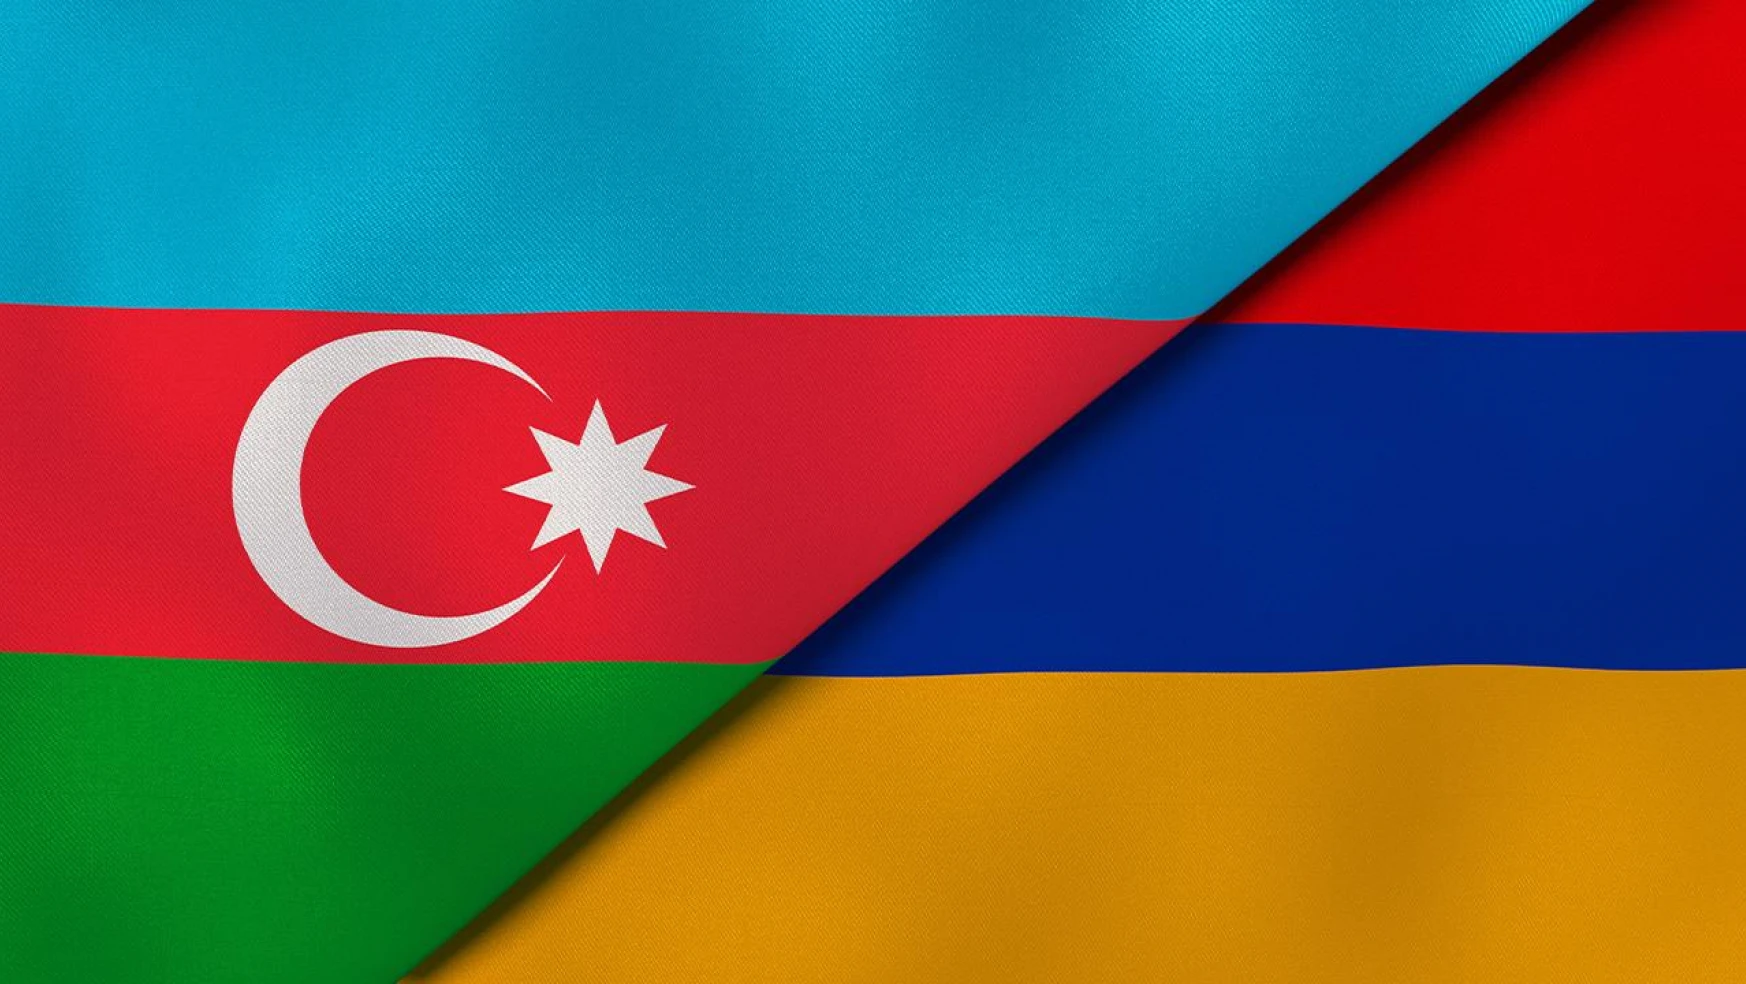 Ermenistan'ın Azerbaycan'ın toprak bütünlüğüne ve egemenliğine yönelik iddialarından vazgeçmesidir